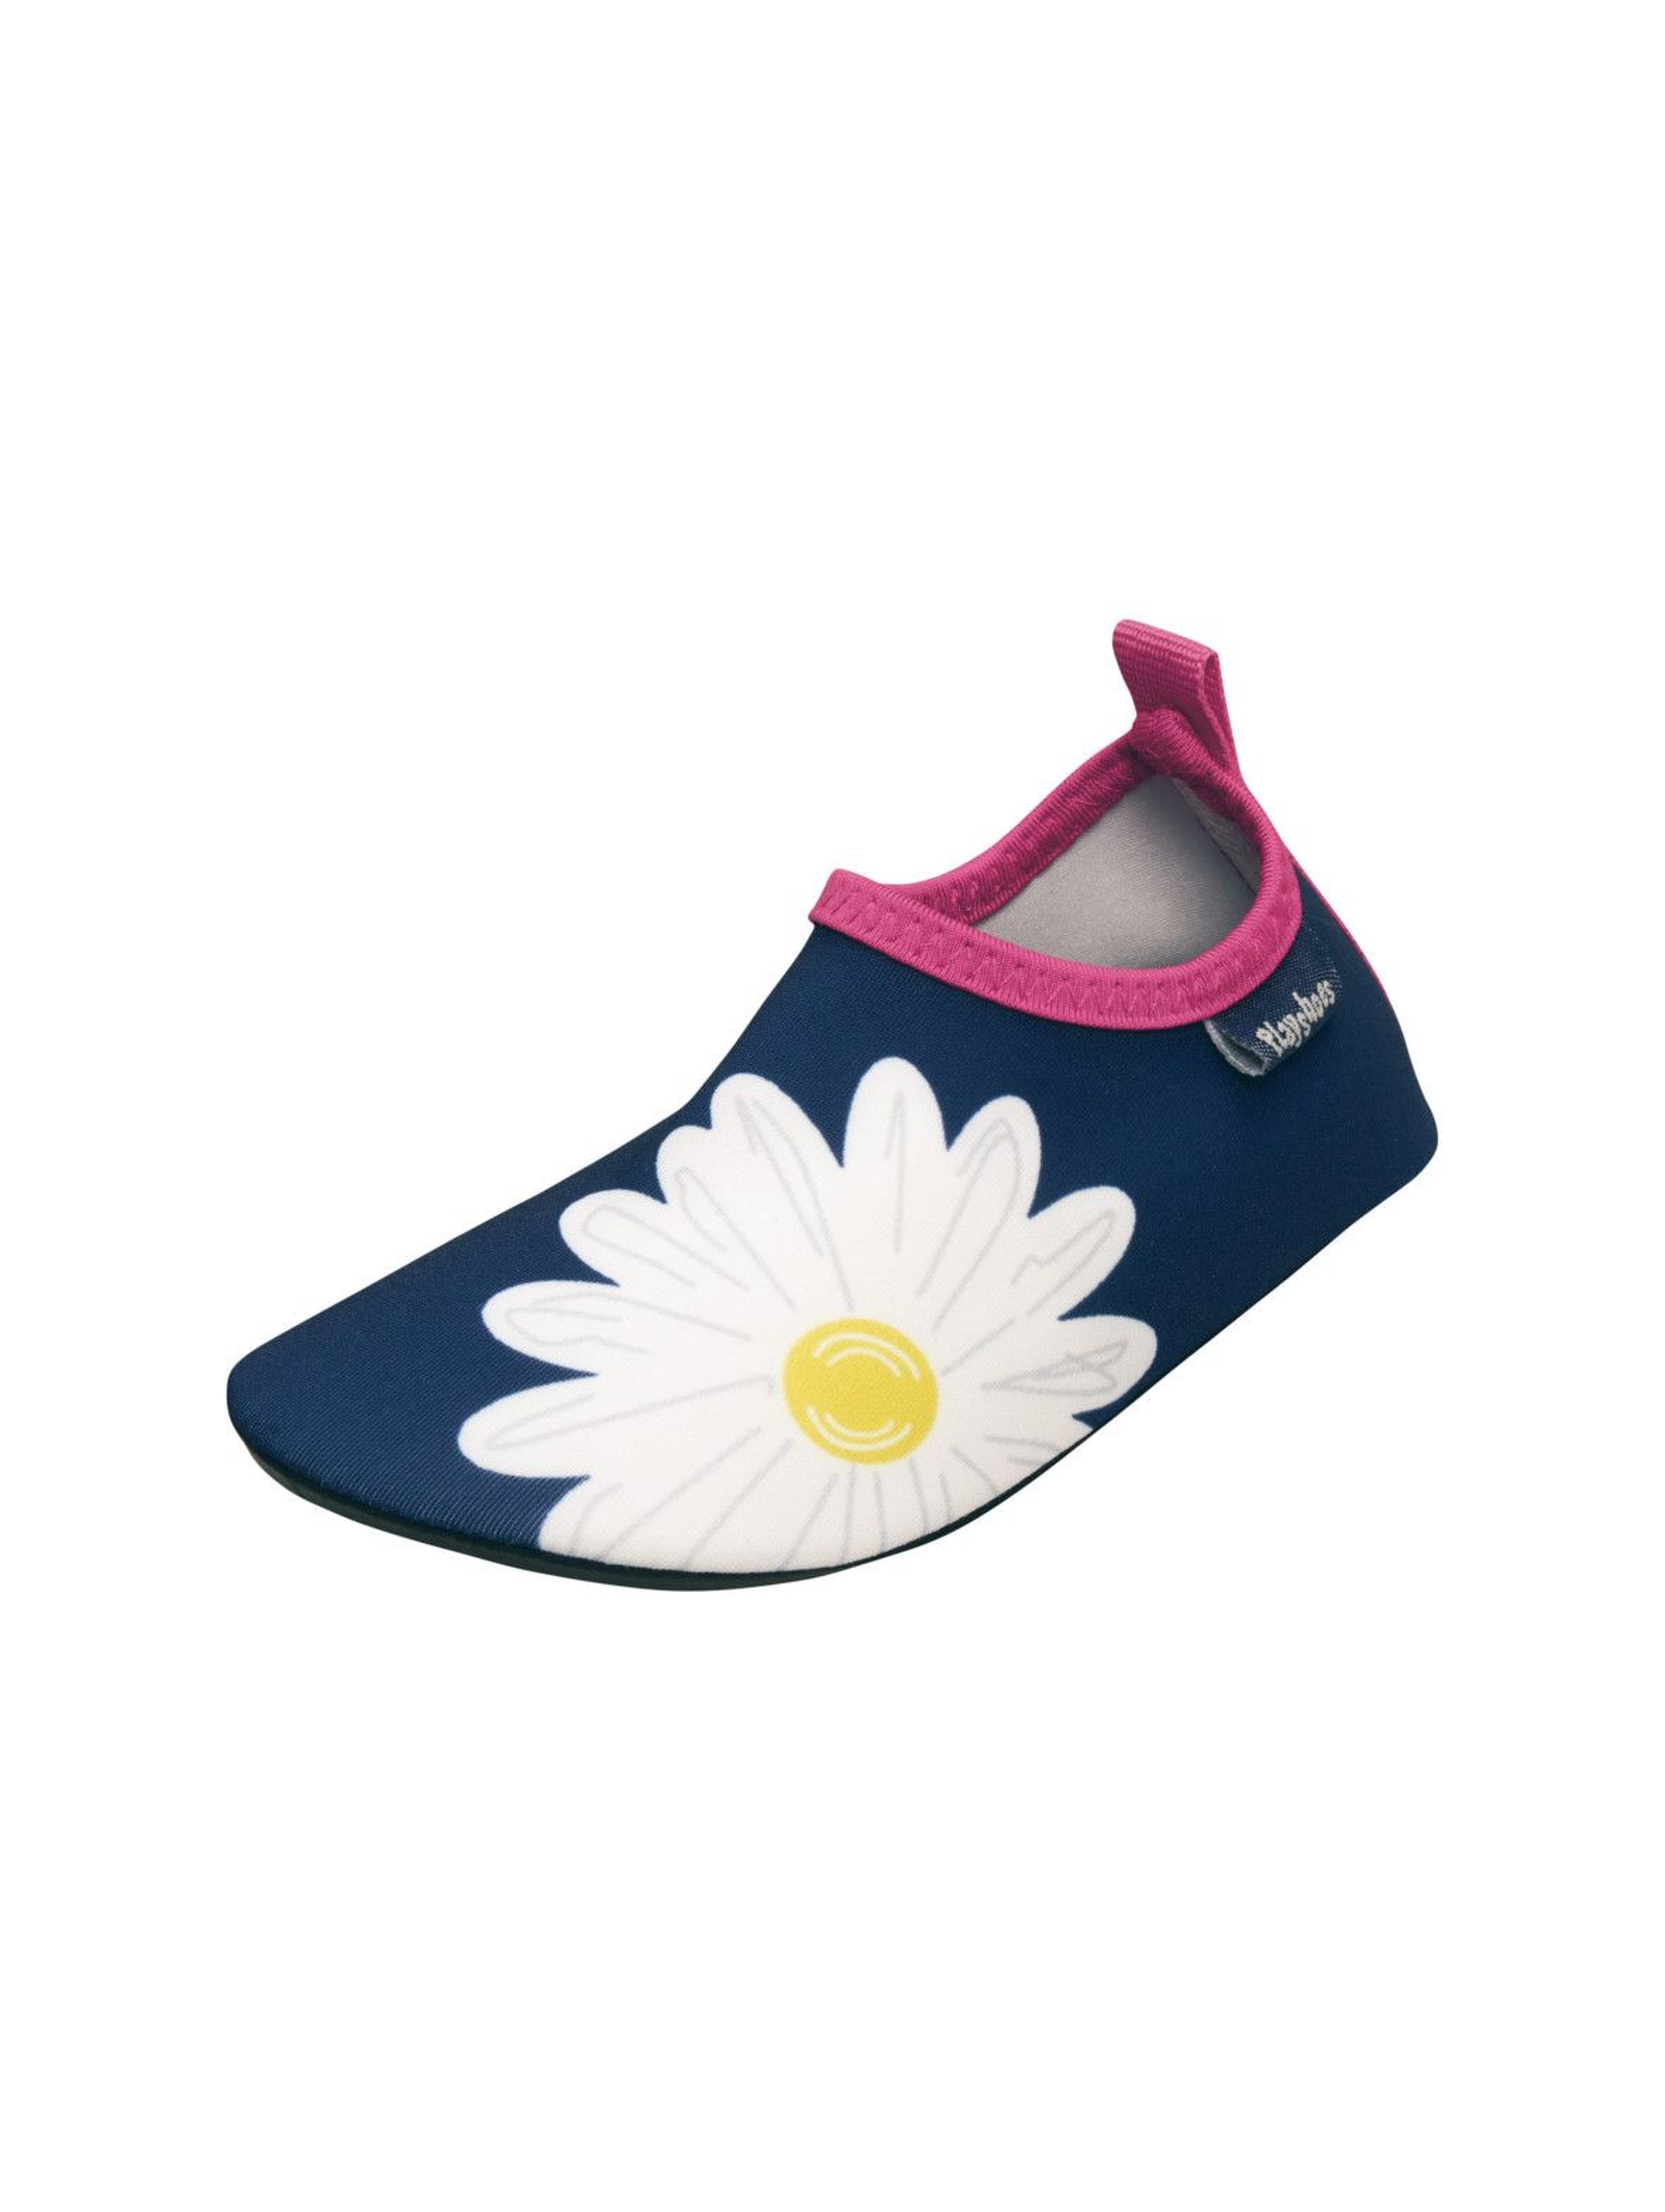 Buty kąpielowe dla dziewczynki- granatowe w kwiatki